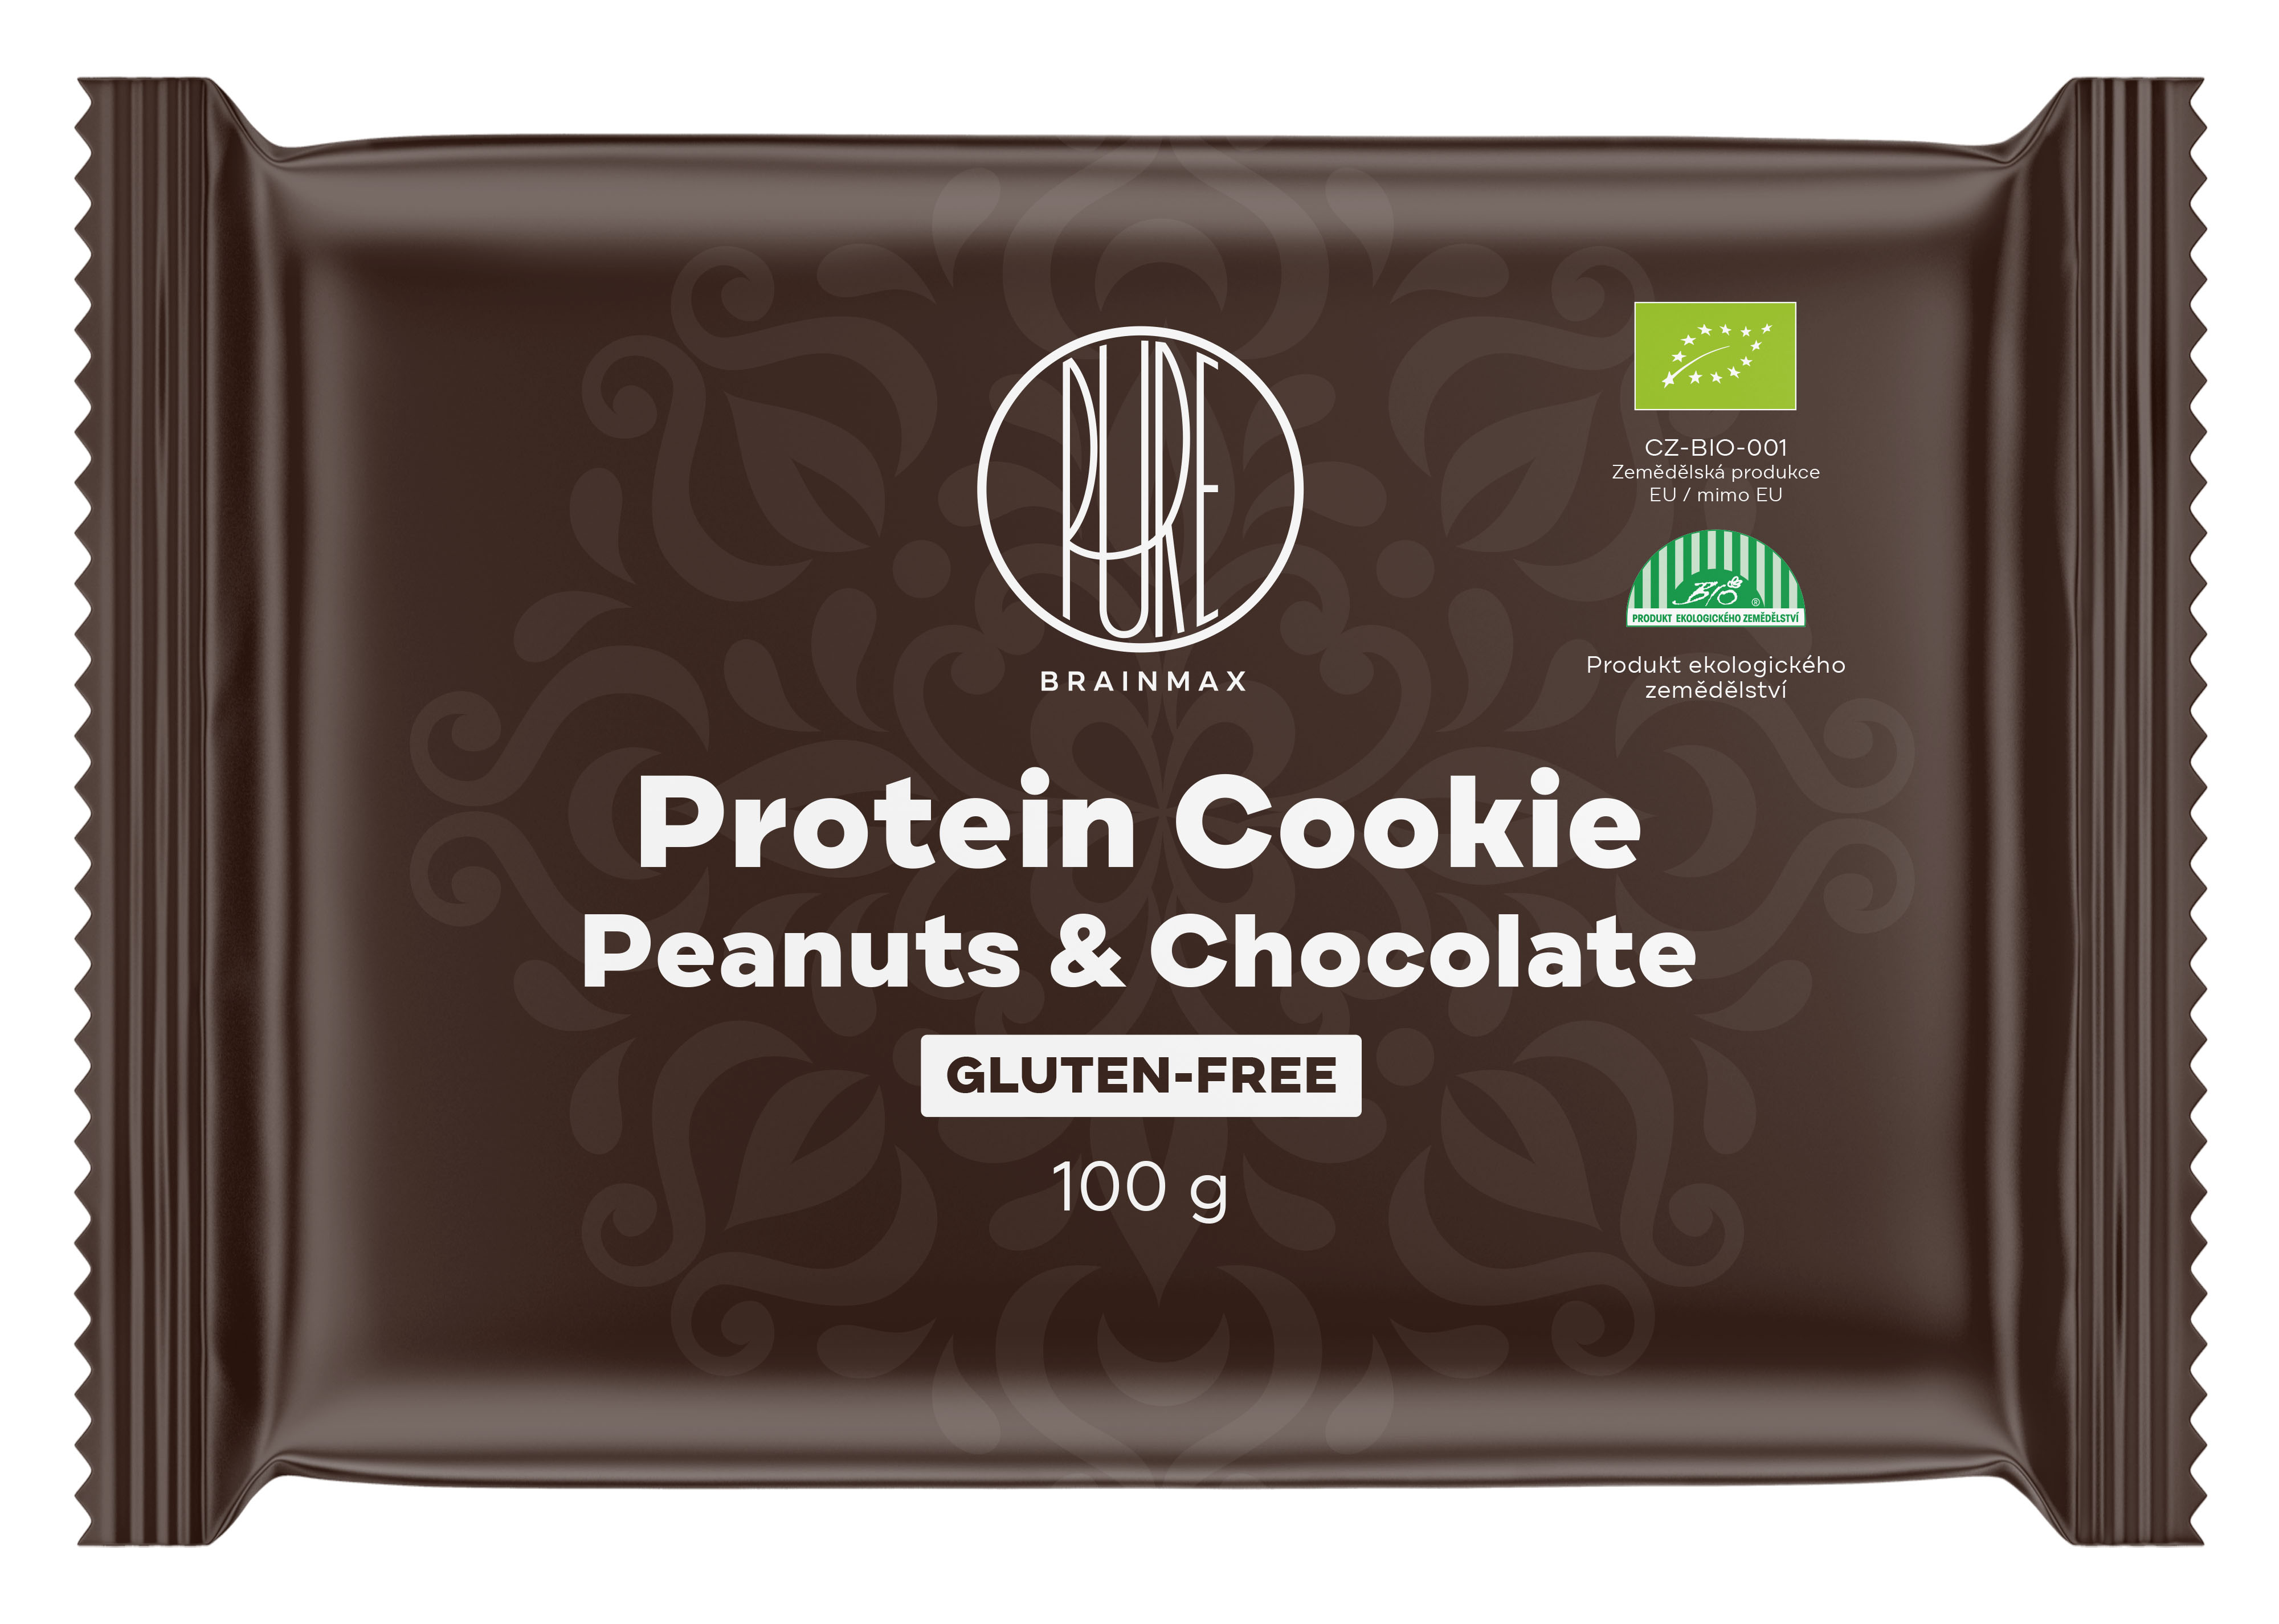 BrainMax Pure Protein Cookie, Arašidy & Čokoláda, BIO, 100 g Proteinová sušenka s hořkou čokoládou a arašídy / *CZ-BIO-001 certifikát